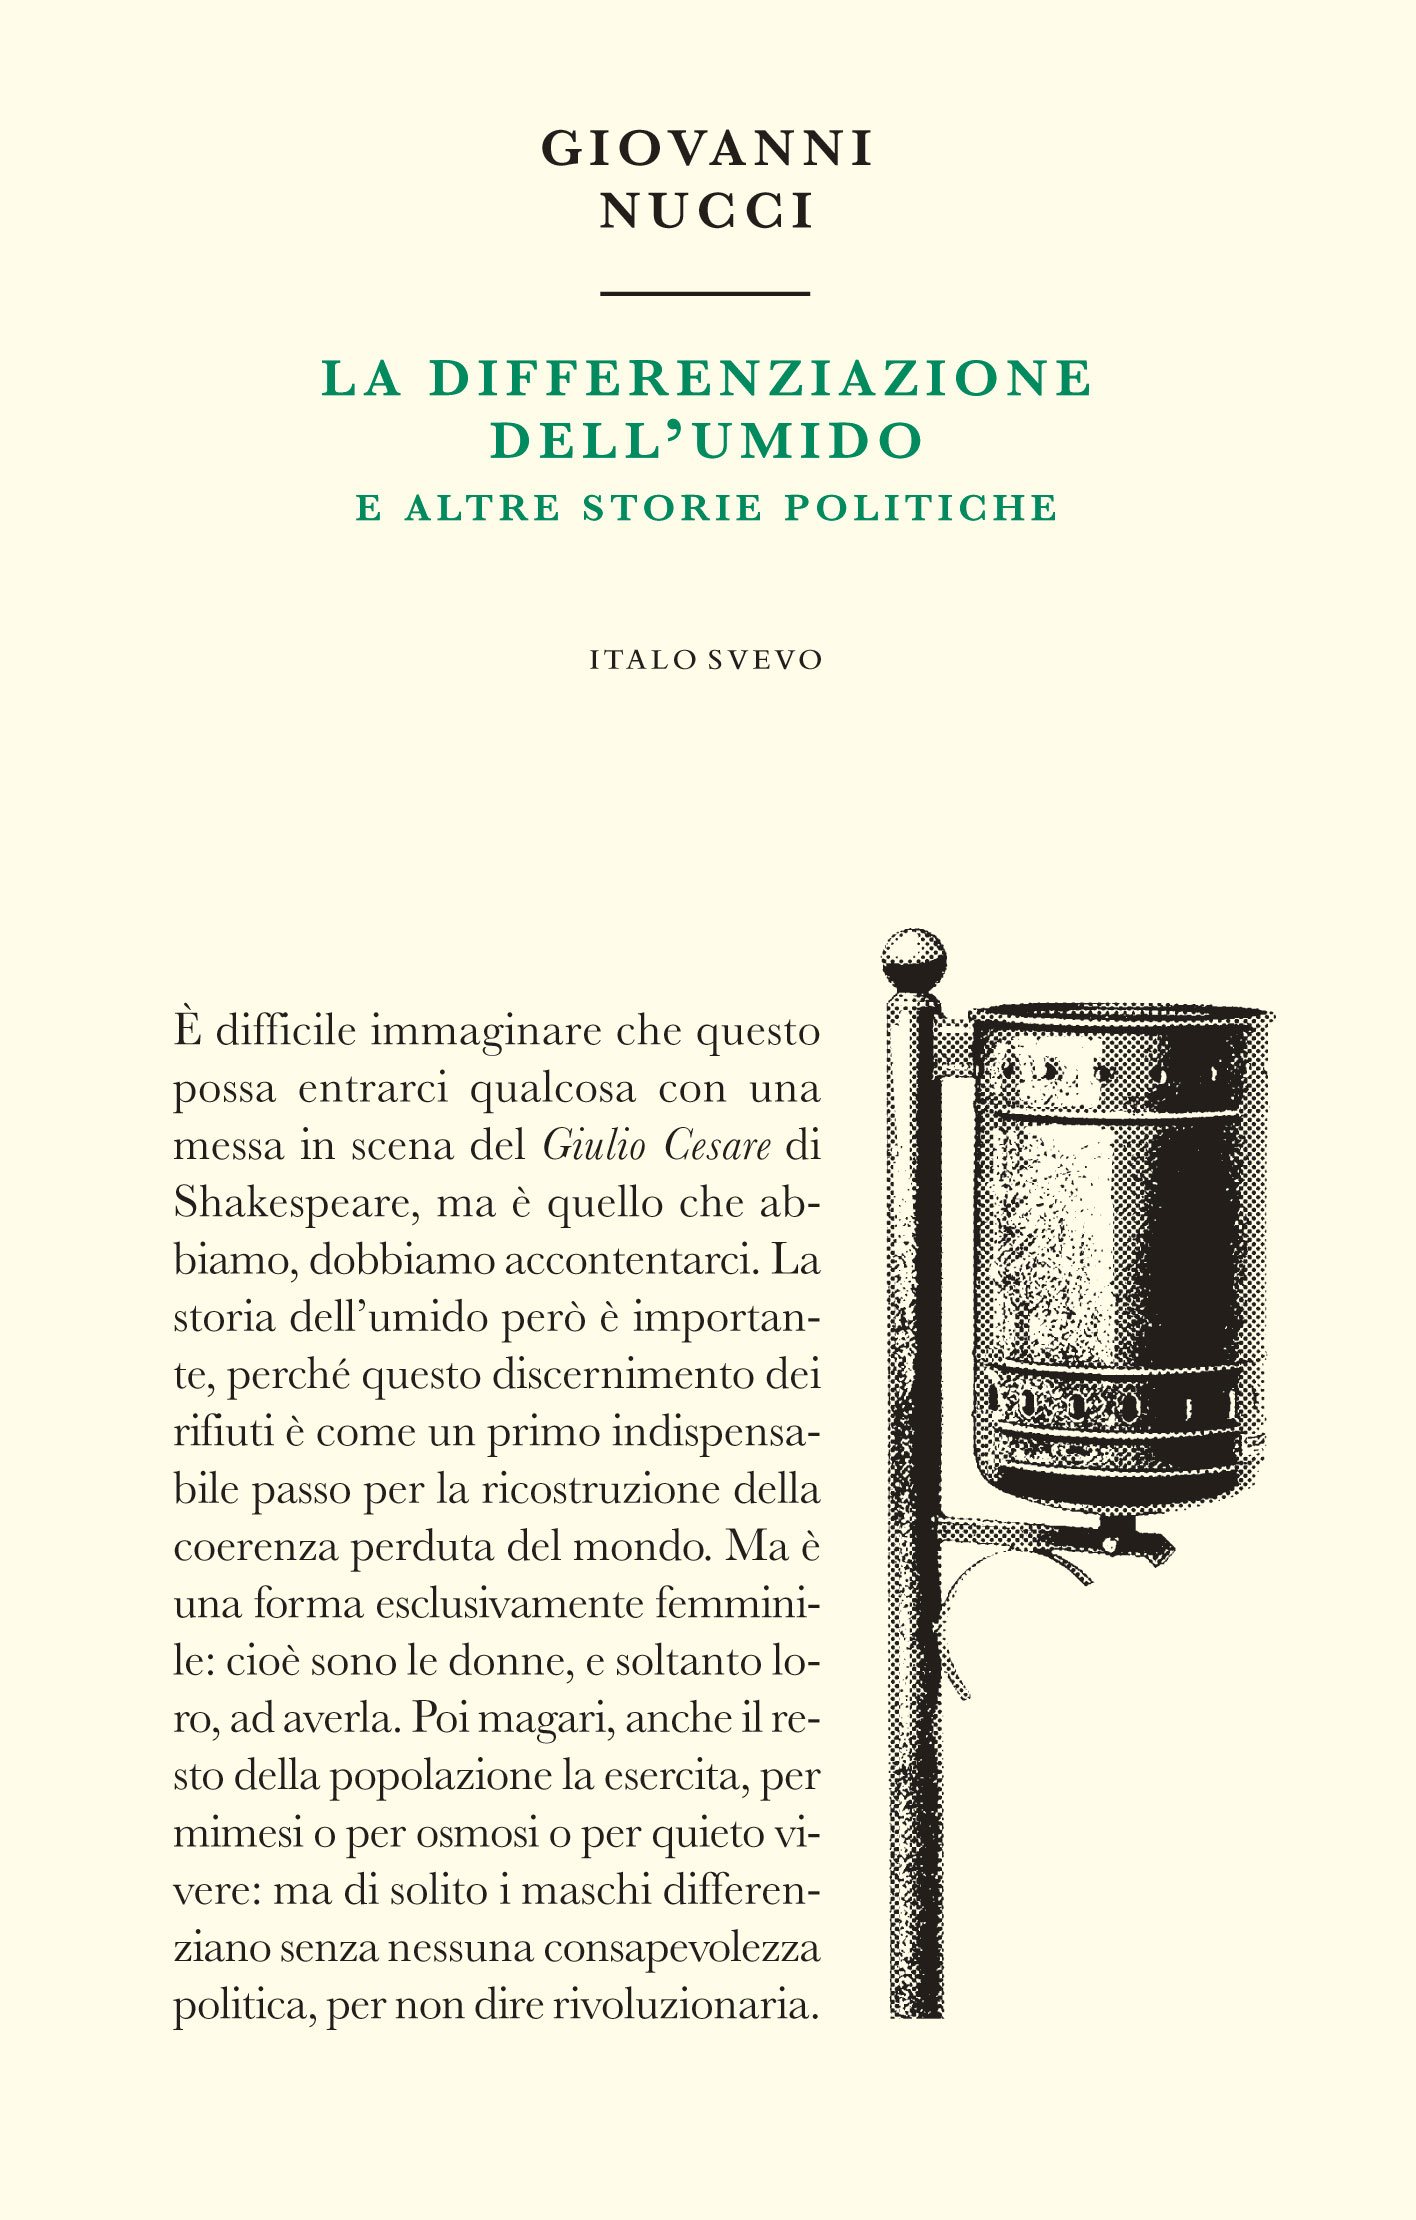 Italo Svevo Edizioni - La differenziazione dell'umido - Nucci